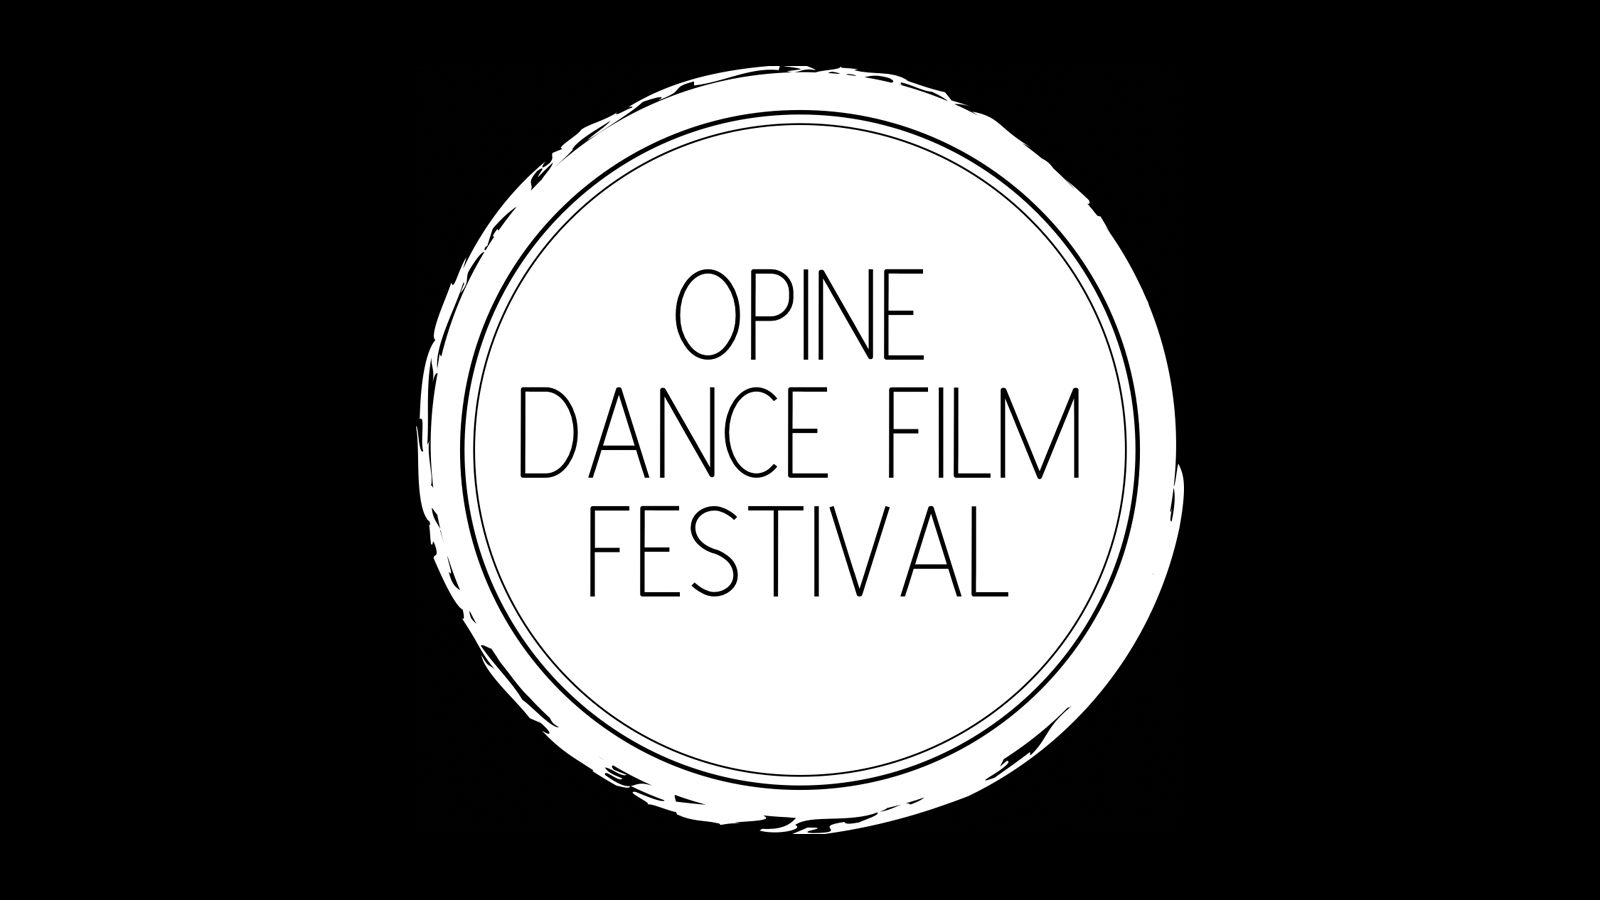 Opine Dance Film Festival